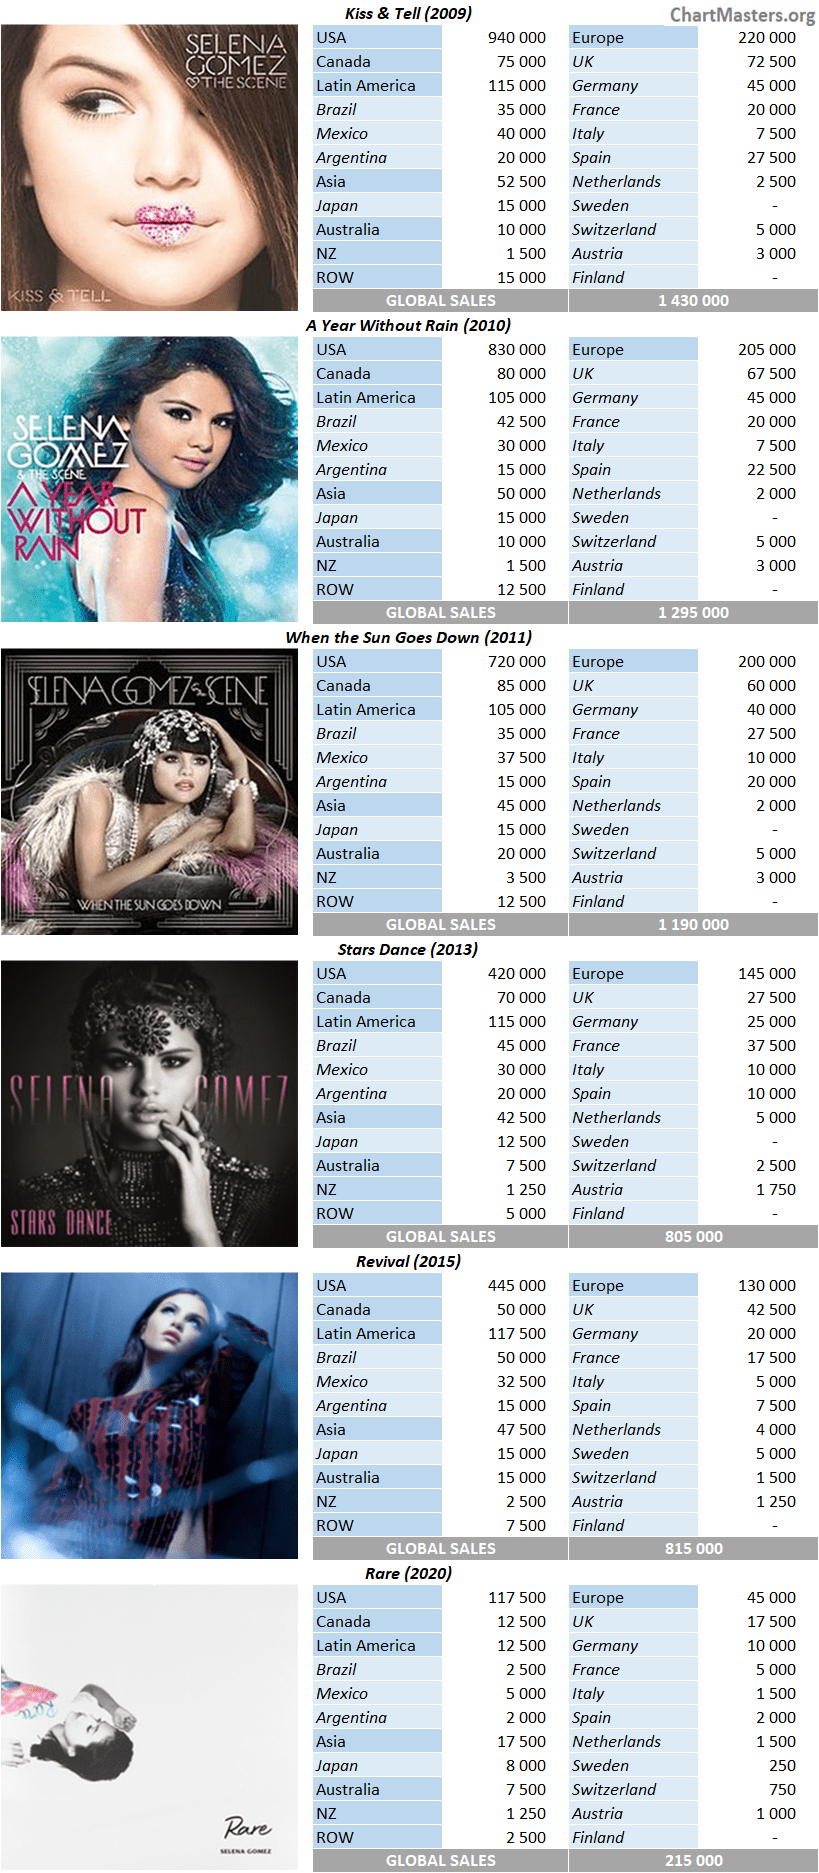 CSPC Selena Gomez album sales breakdowns